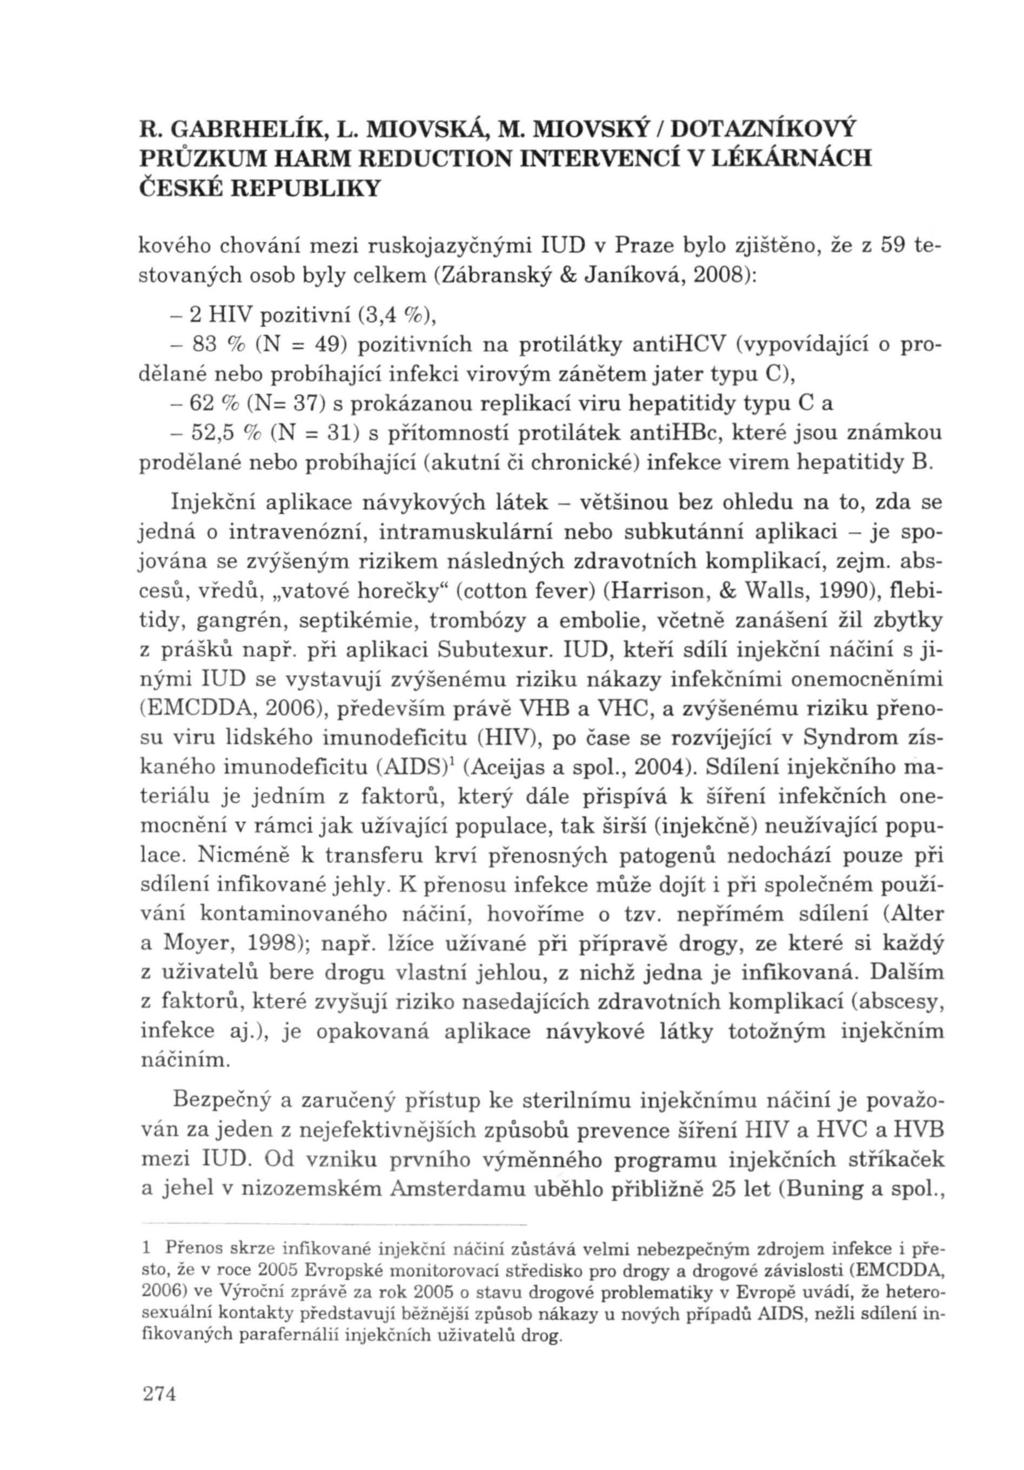 kového chování mezi ruskojazyčnými IUD v Praze bylo zjištěno, že z 59 testovaných osob byly celkem (Zábranský & J aníková, 2008): - 2 HIV pozitivní (3,4 %), - 83 % (N = 49) pozitivních na protilátky